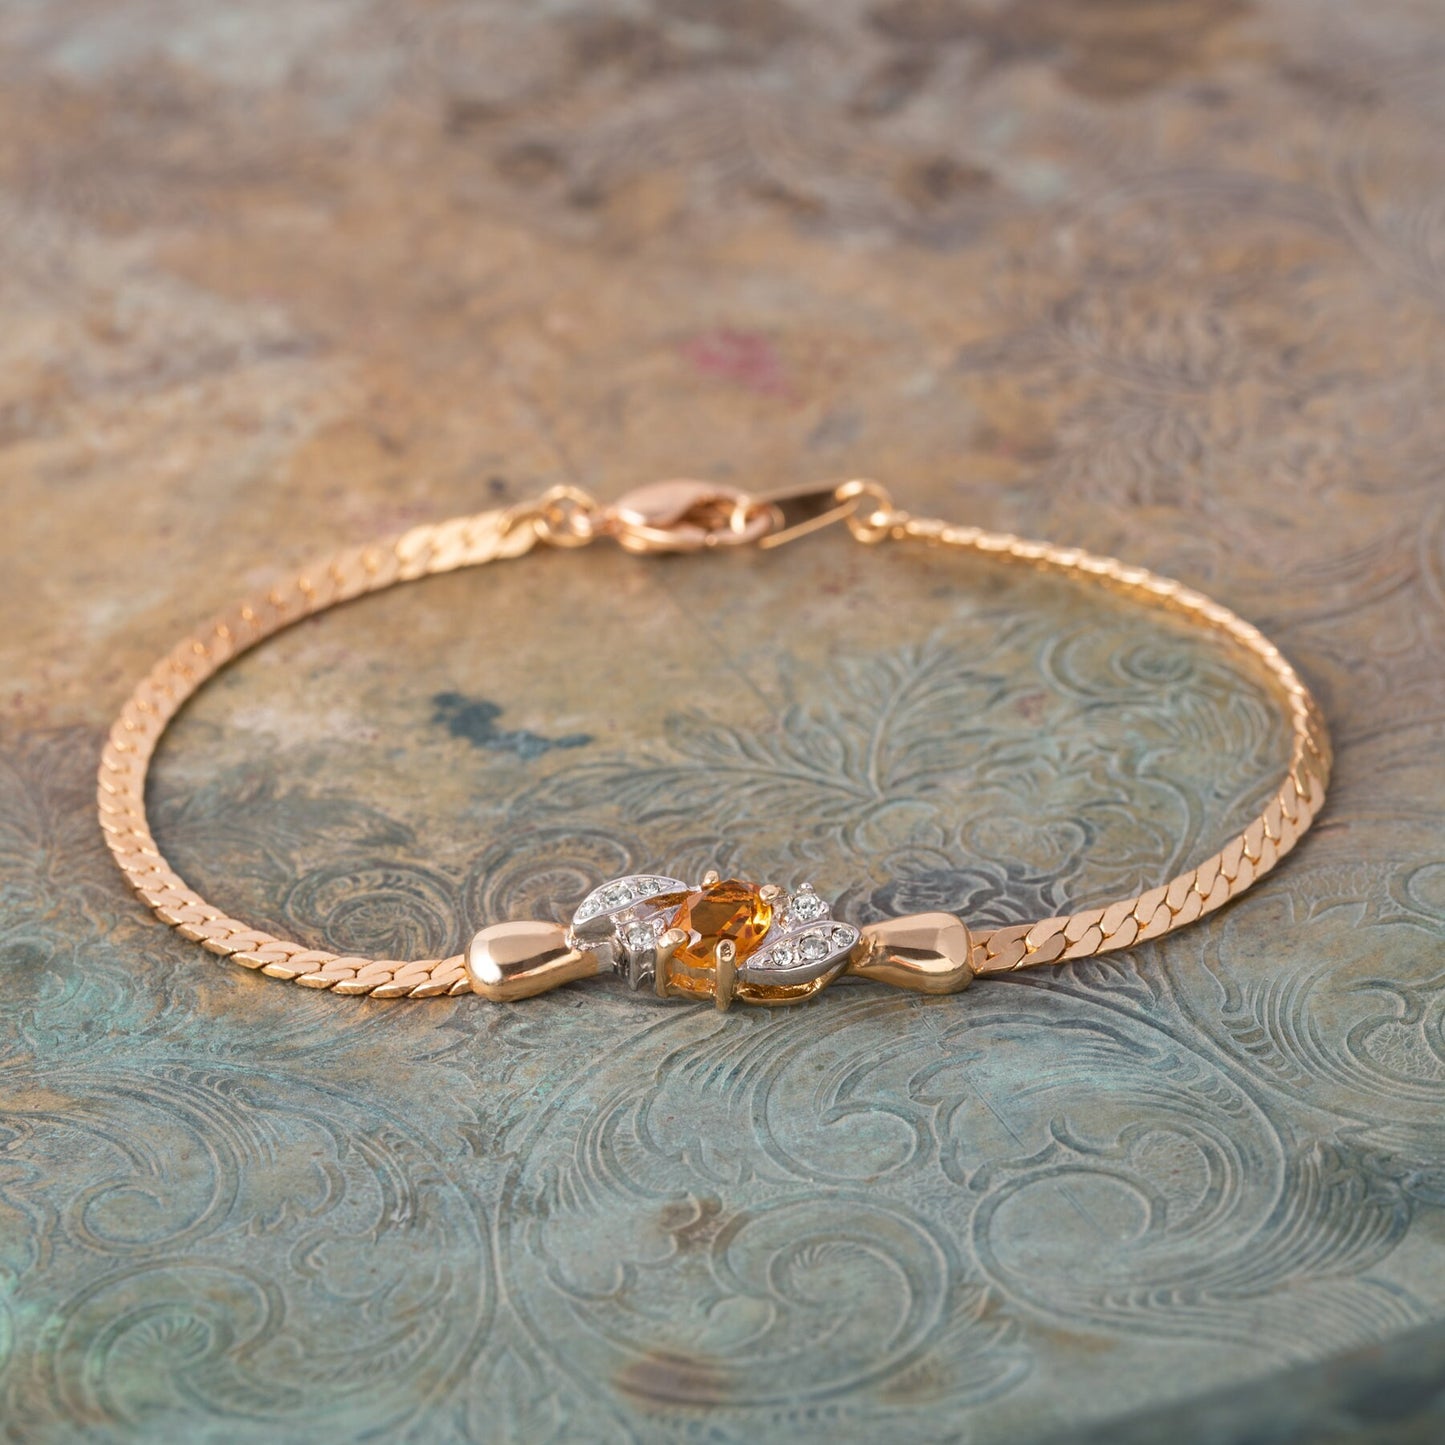 Vintage Ring Bracelet Light Topaz and Clear Swarovski Crystal 18kt Gold Plated Bracelet B1308